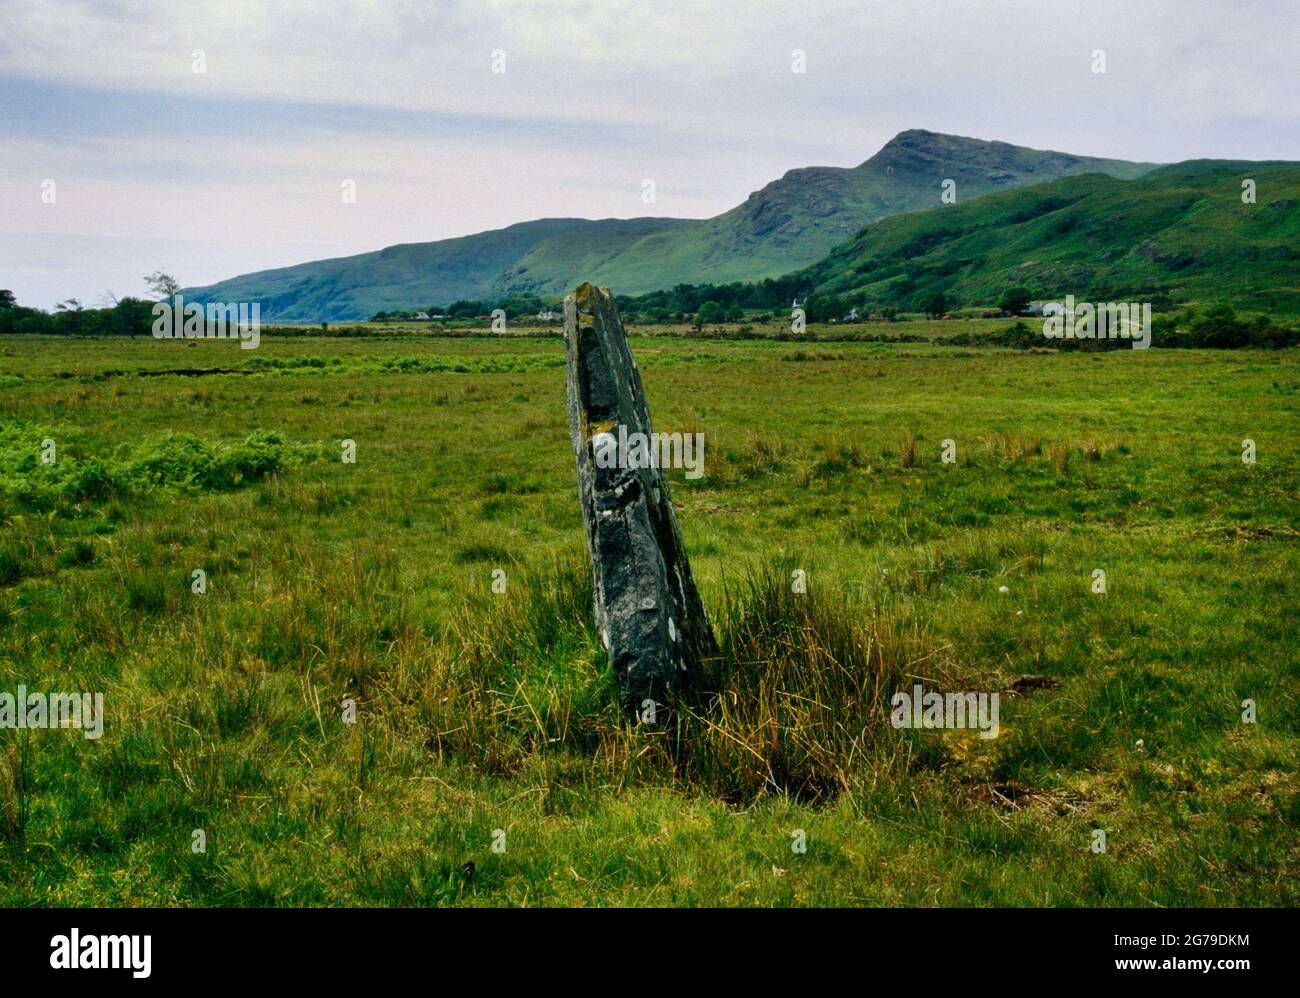 Vue sud-ouest de la pierre sur pied quelque 365m nord-ouest du cercle de pierre de Lochbuie, Mull, Argyll et Bute, Écosse, Royaume-Uni. S'inclinant vers le se, c 2m de haut. Banque D'Images